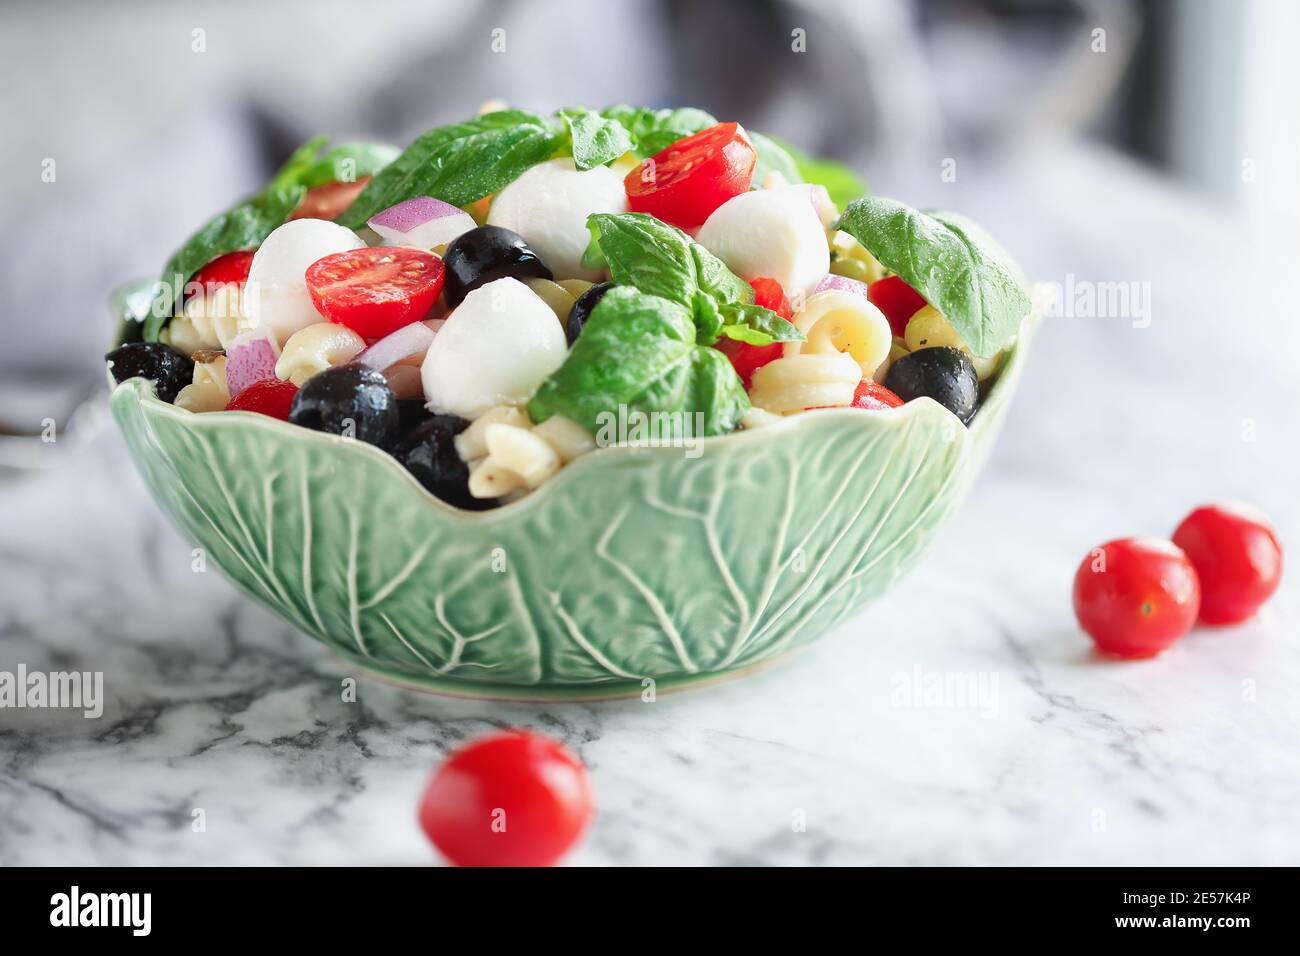 Italienischer Nudelsalat mit frischen Tomaten, schwarzen Oliven, roten Zwiebel Mozzarella Käsebällchen, Basilikum und ein Olivenöl Dressing über Marmortisch. Extrem Stockfoto